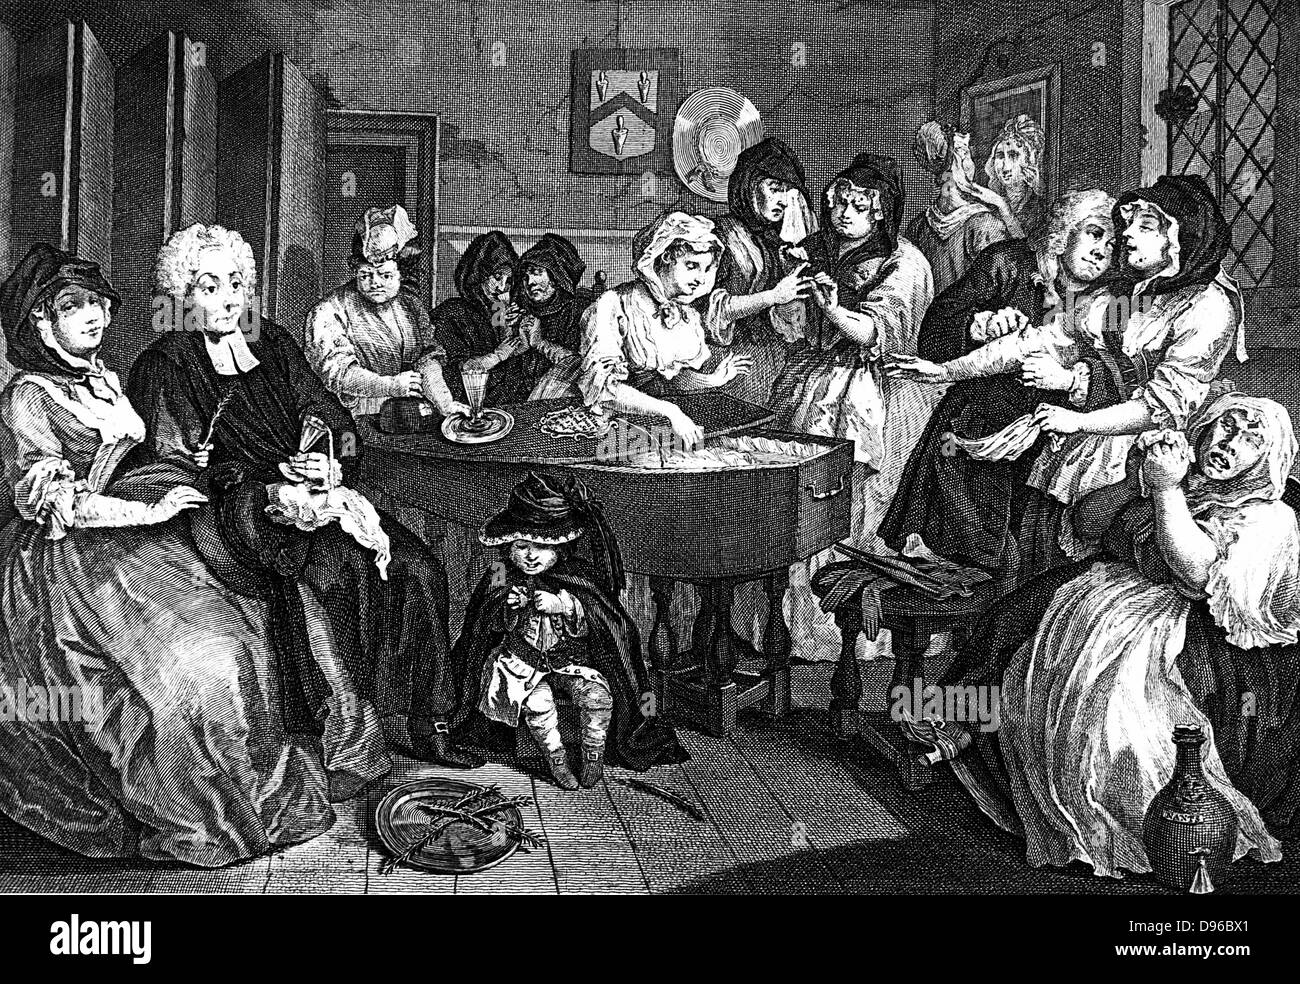 Kate Hackabout, la prostituée, est placé dans son cercueil. Sixième et dernière plaque dans William Hogarth's series 'progrès' de la prostituée (1733). William Beckford ont acheté les peintures originales qui ont été détruits dans l'incendie de Fonthill en 1755. Gravure Banque D'Images